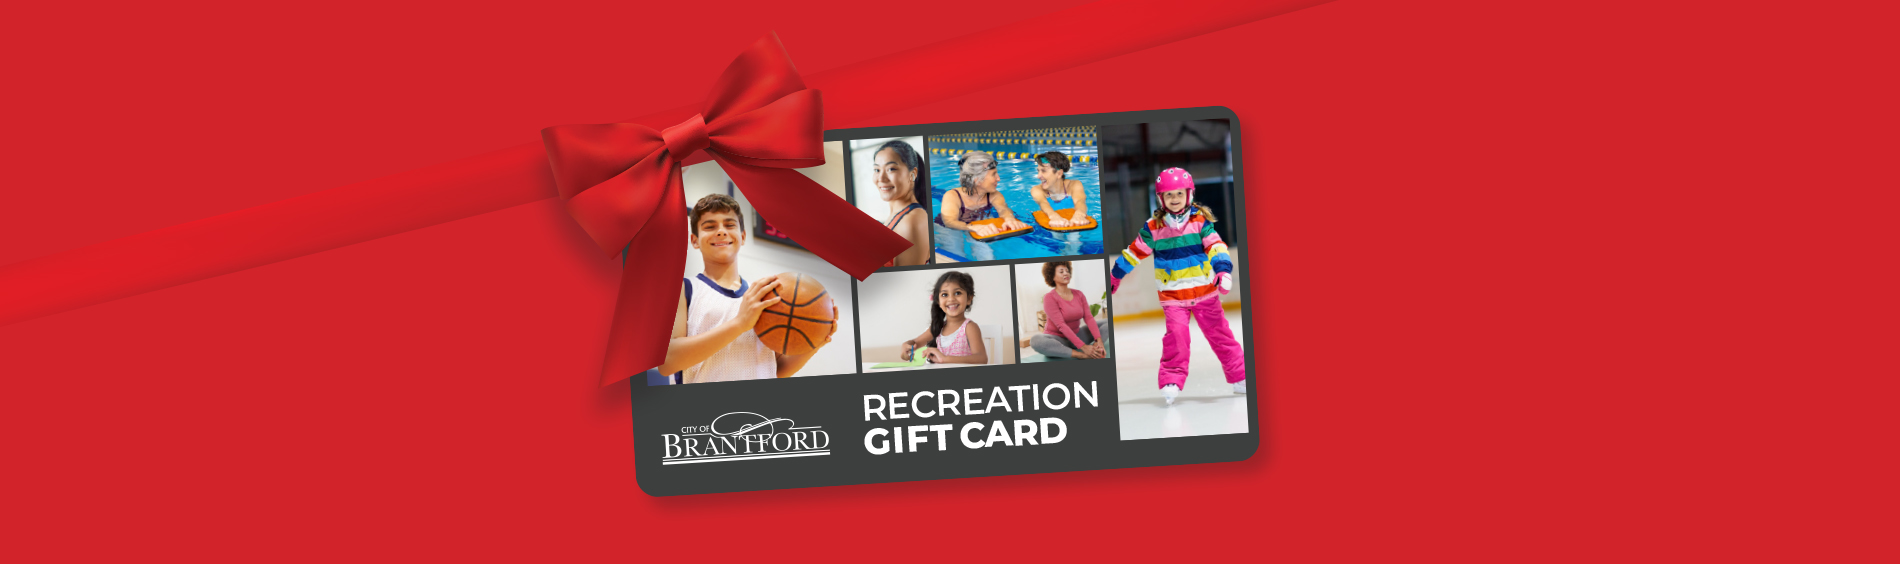 Brantford Recreation Gift Card